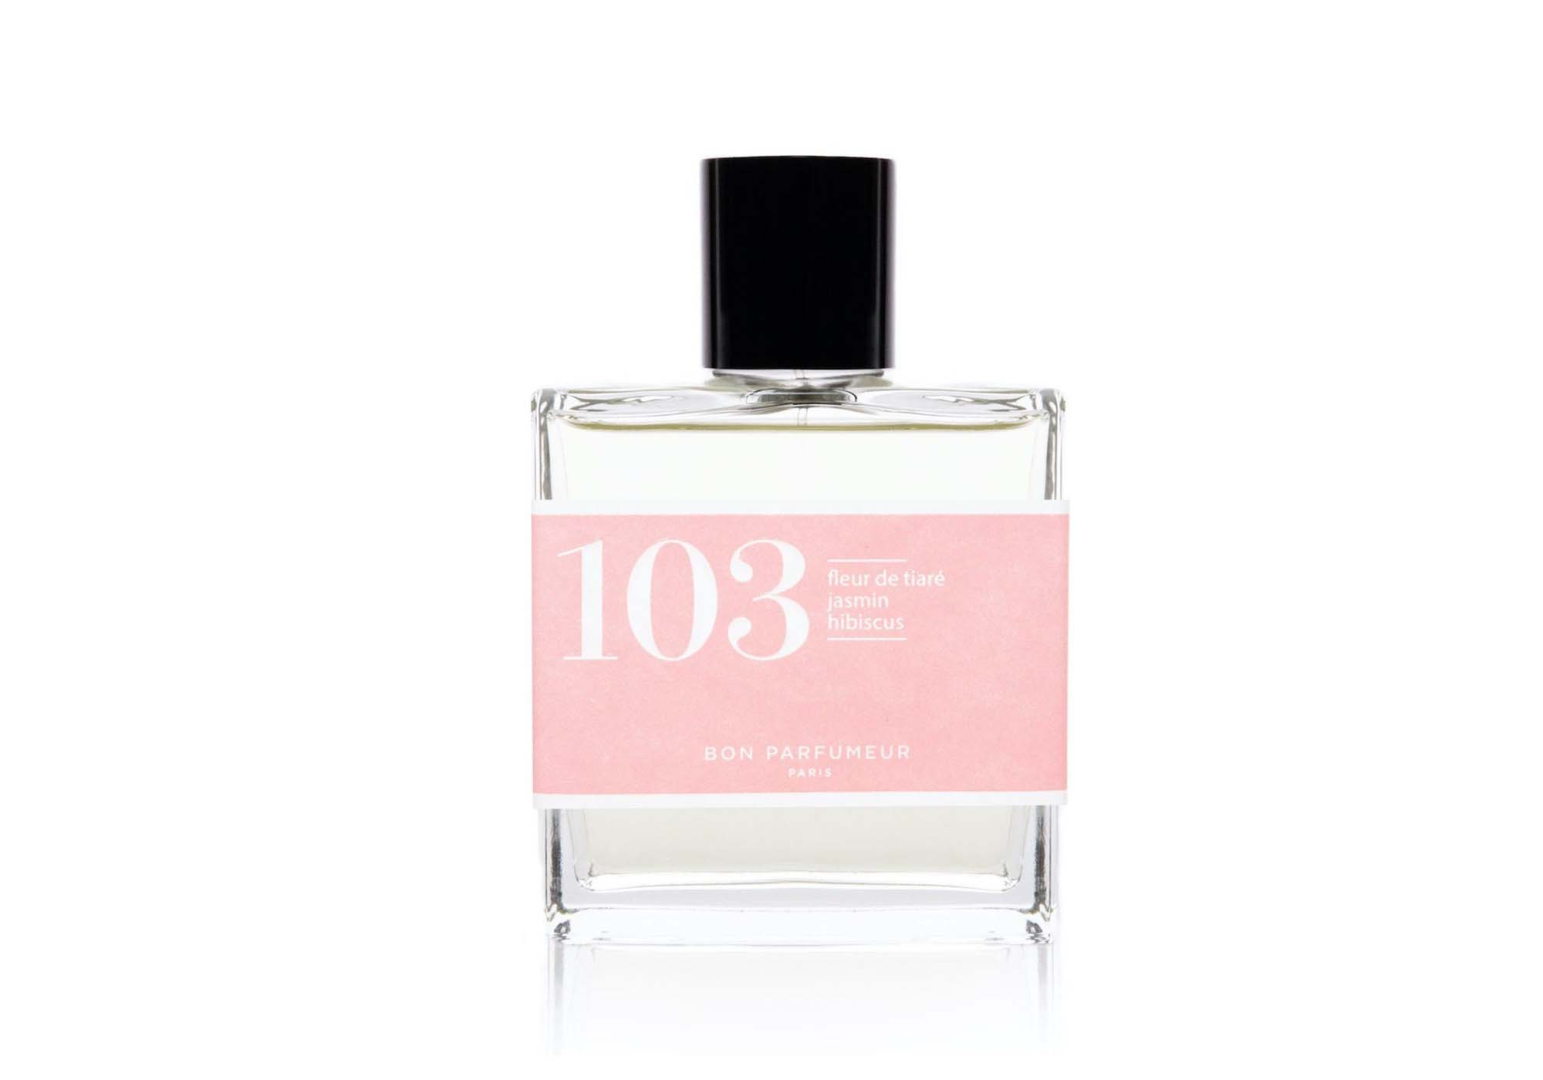 Parfum 103 Fleur de tiaré Jasmin Hibiscus 30ml - BON PARFUMEUR